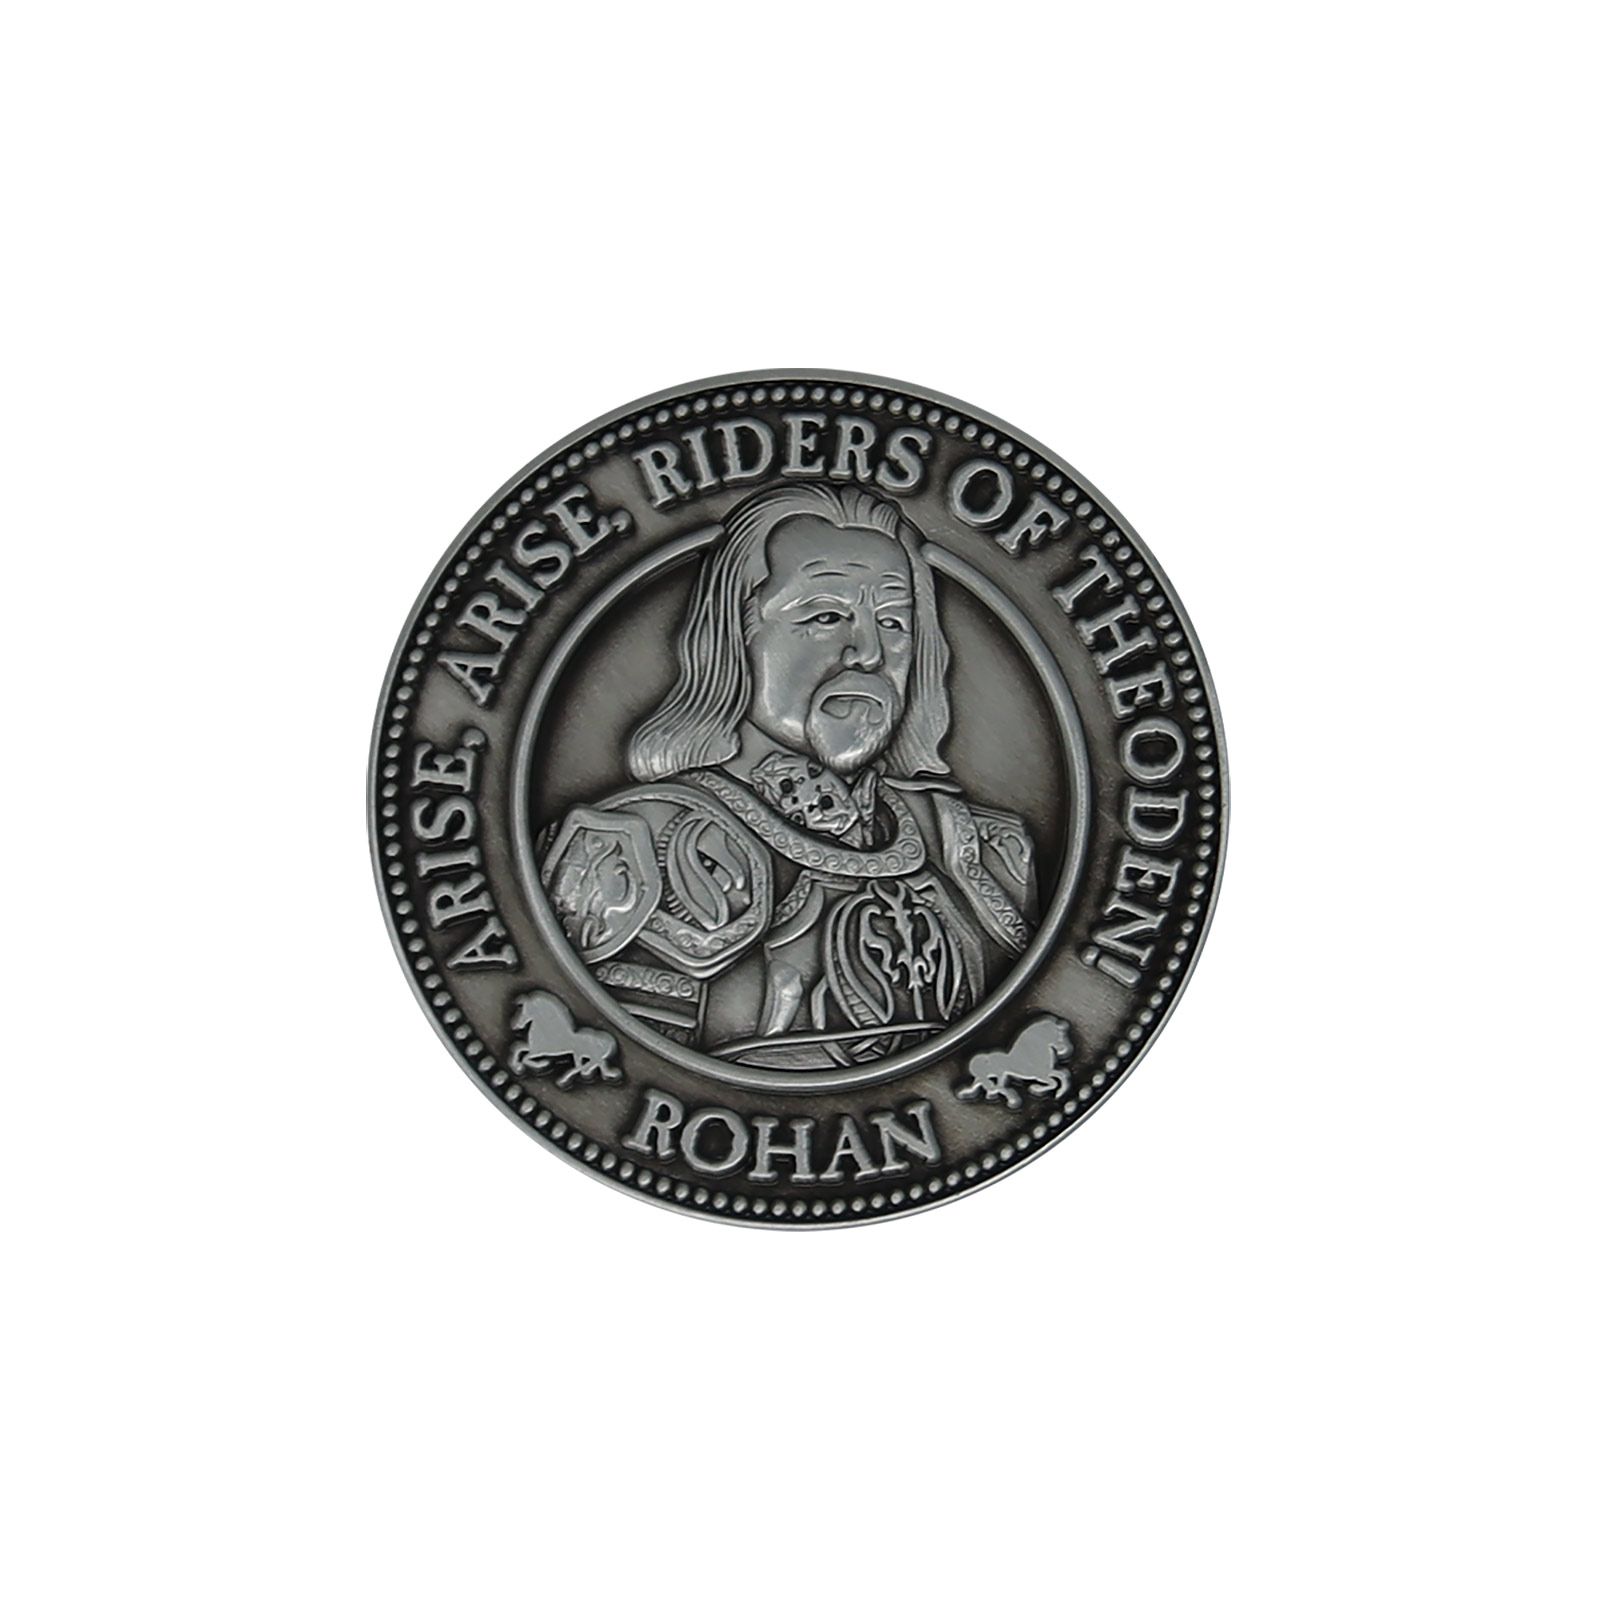 Herr der Ringe - Rohan Sammlermünze